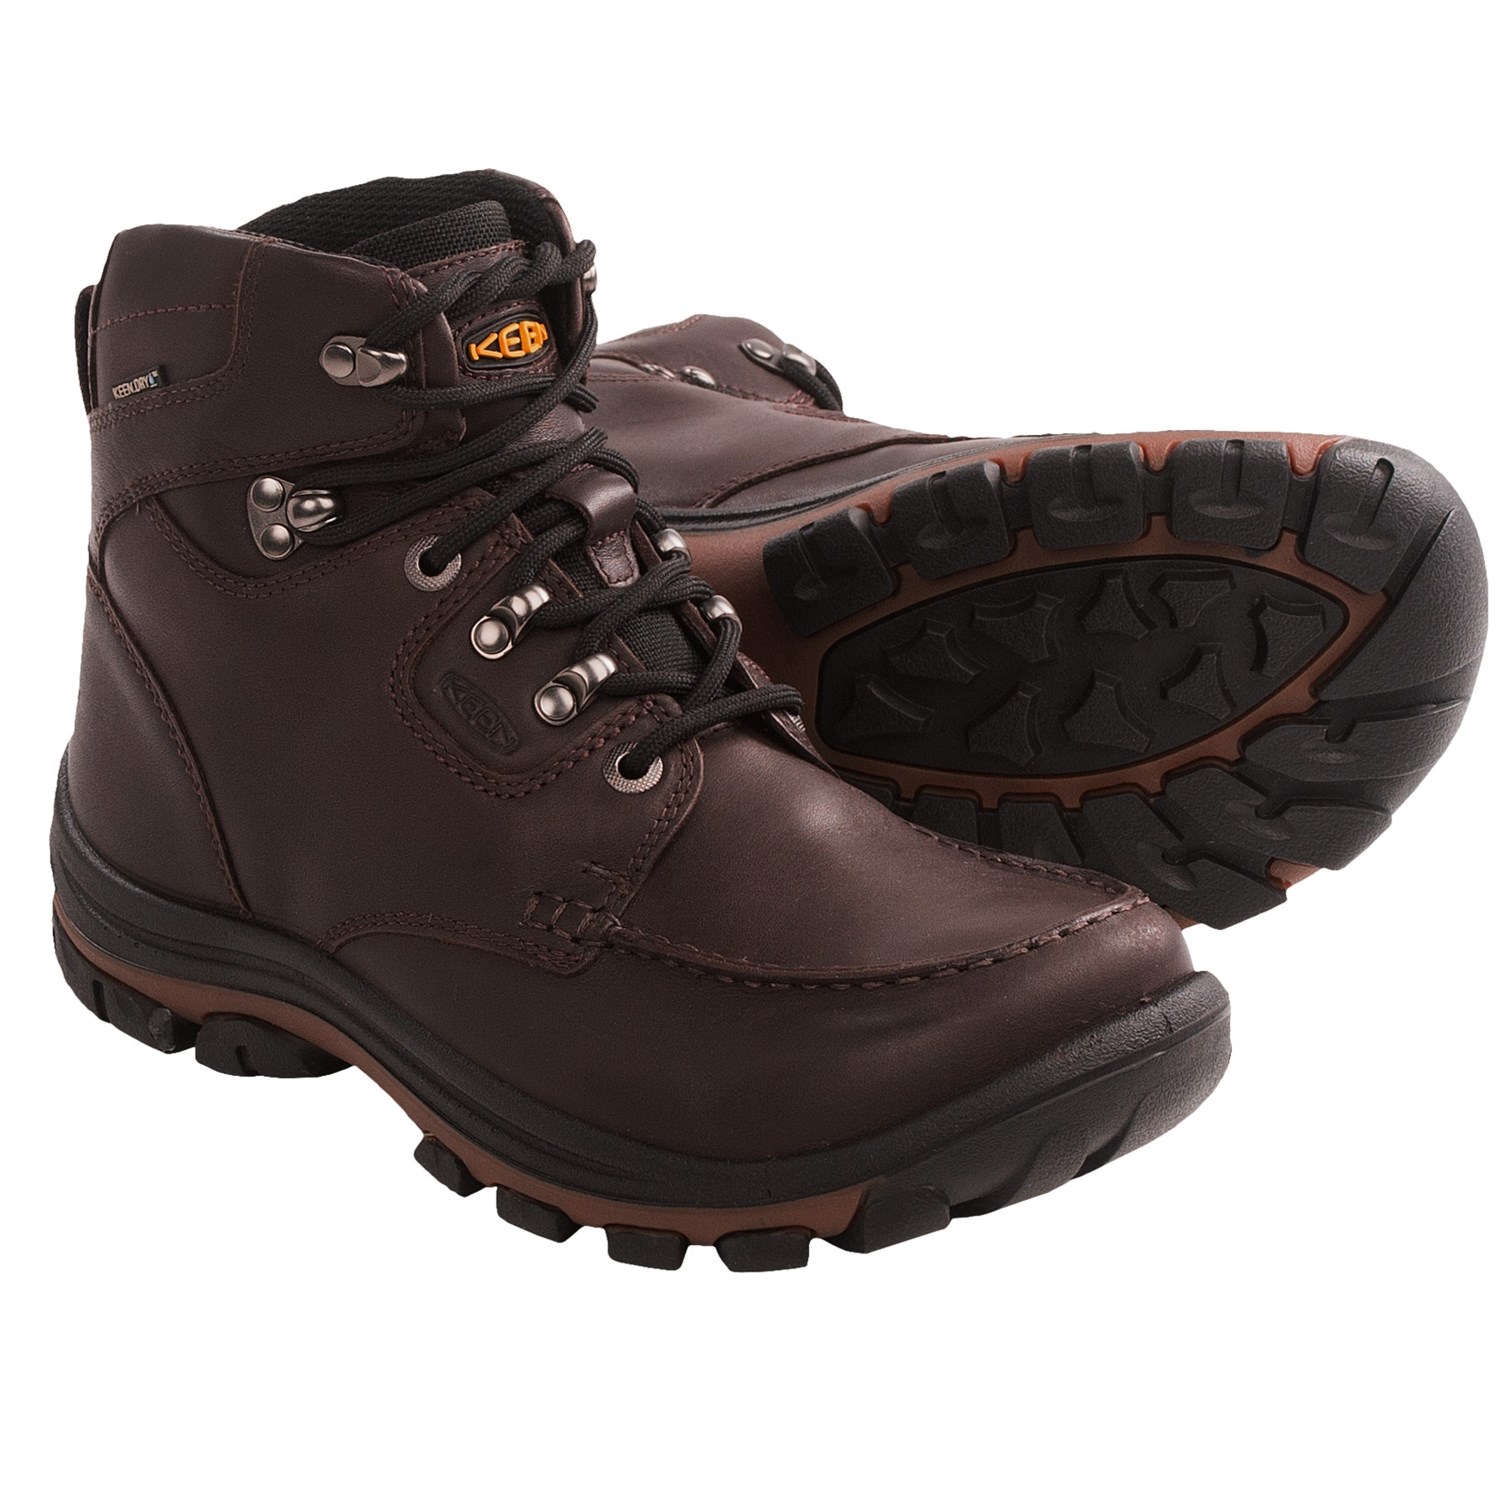 Keen NoPo Boots - Waterproof, Leather (For Men) in Brown Full Grain